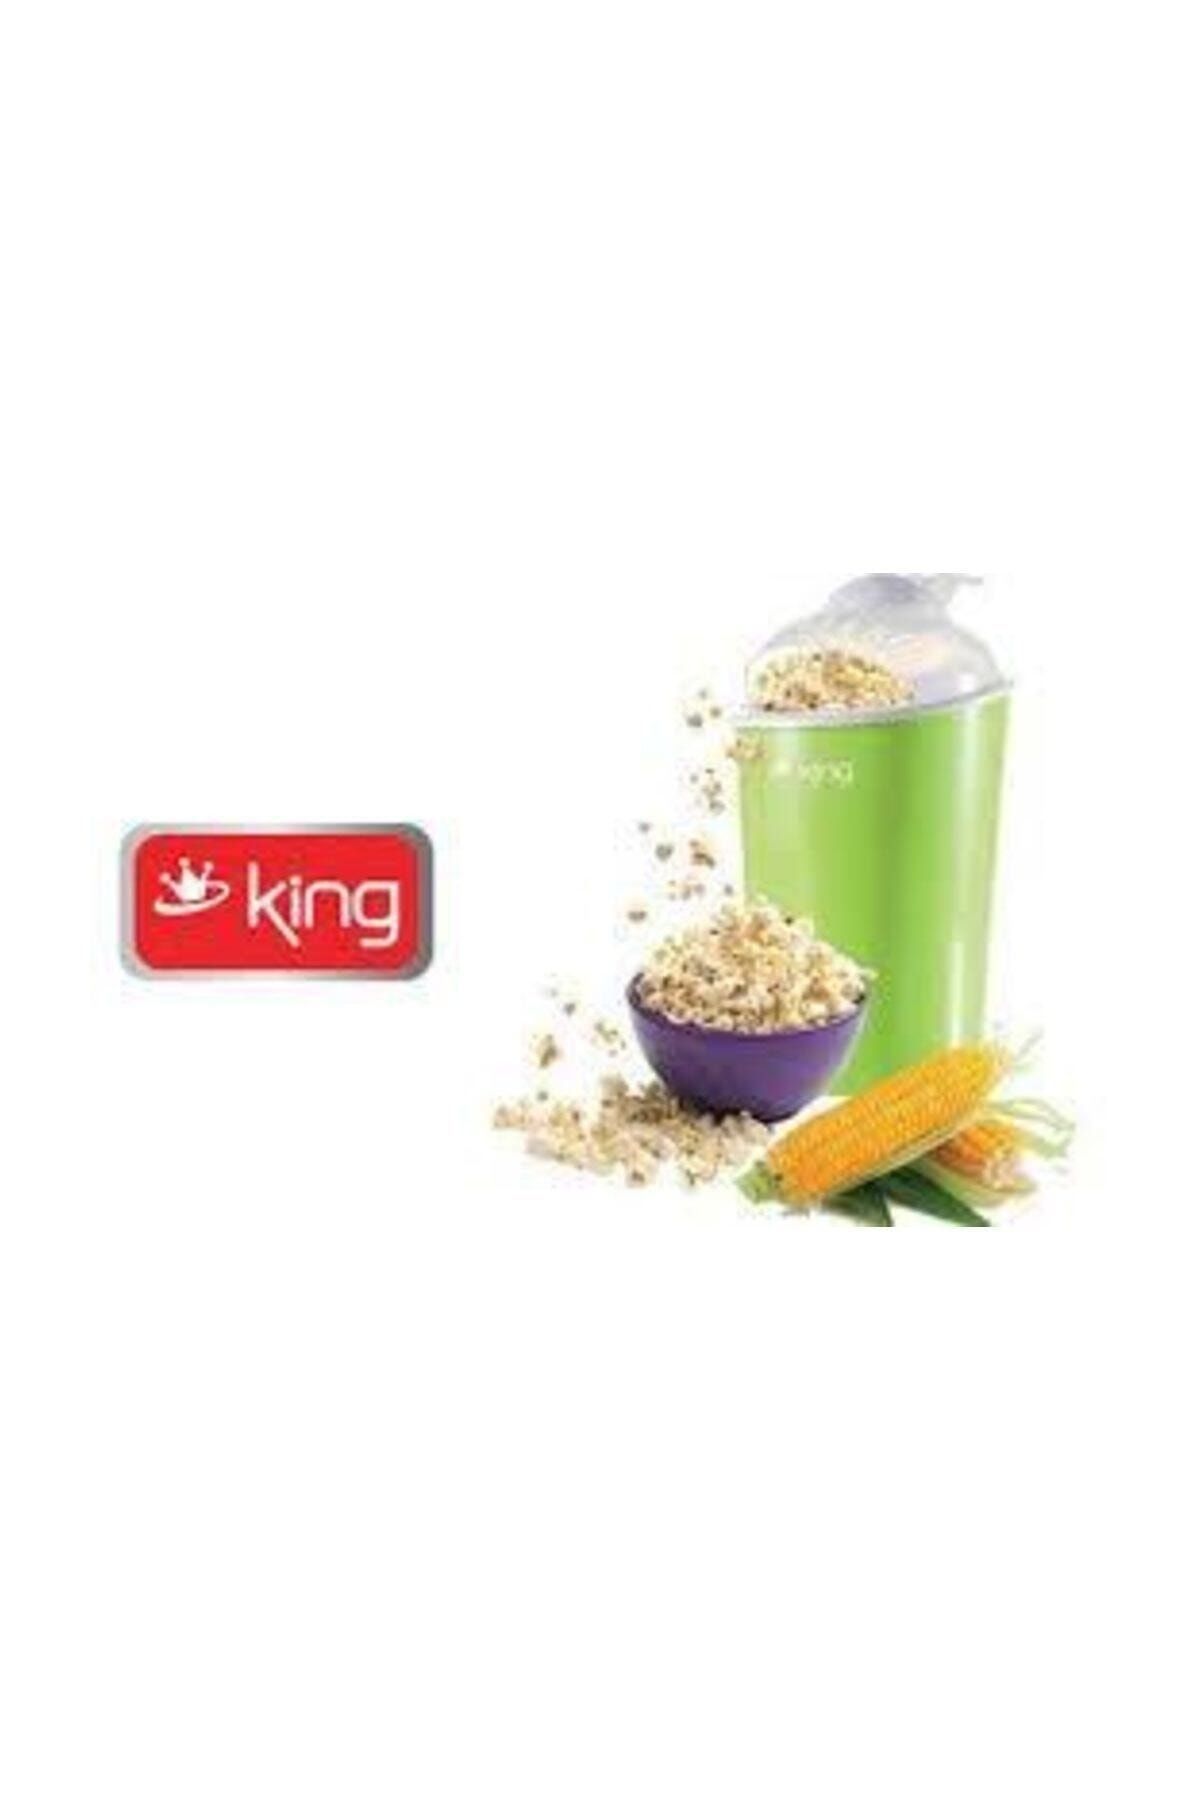 King K313 Pop Corn Mısır Patlatma Makinası